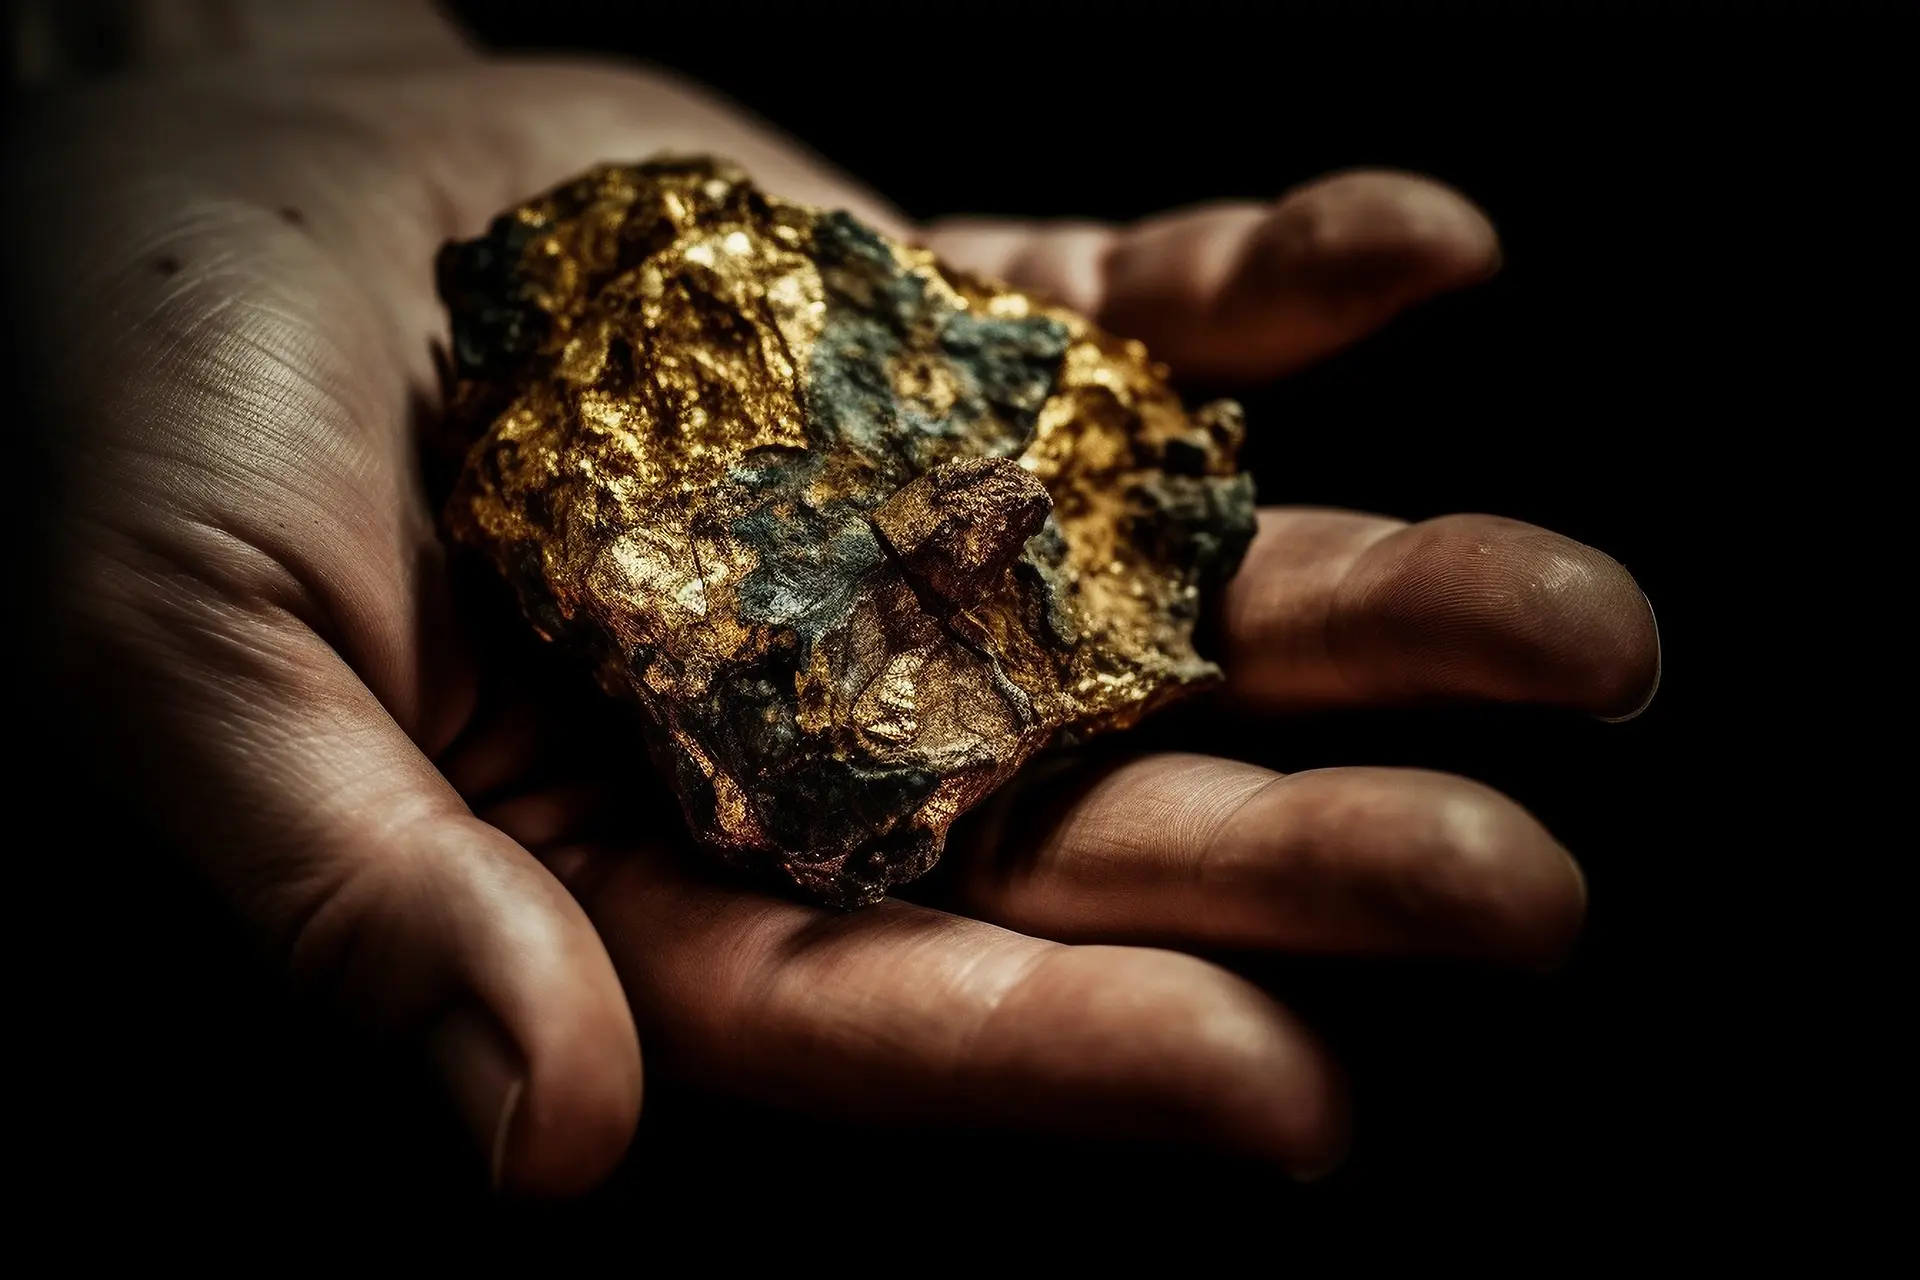 Ein großer klumpen Gold in einer offenen Handfläche